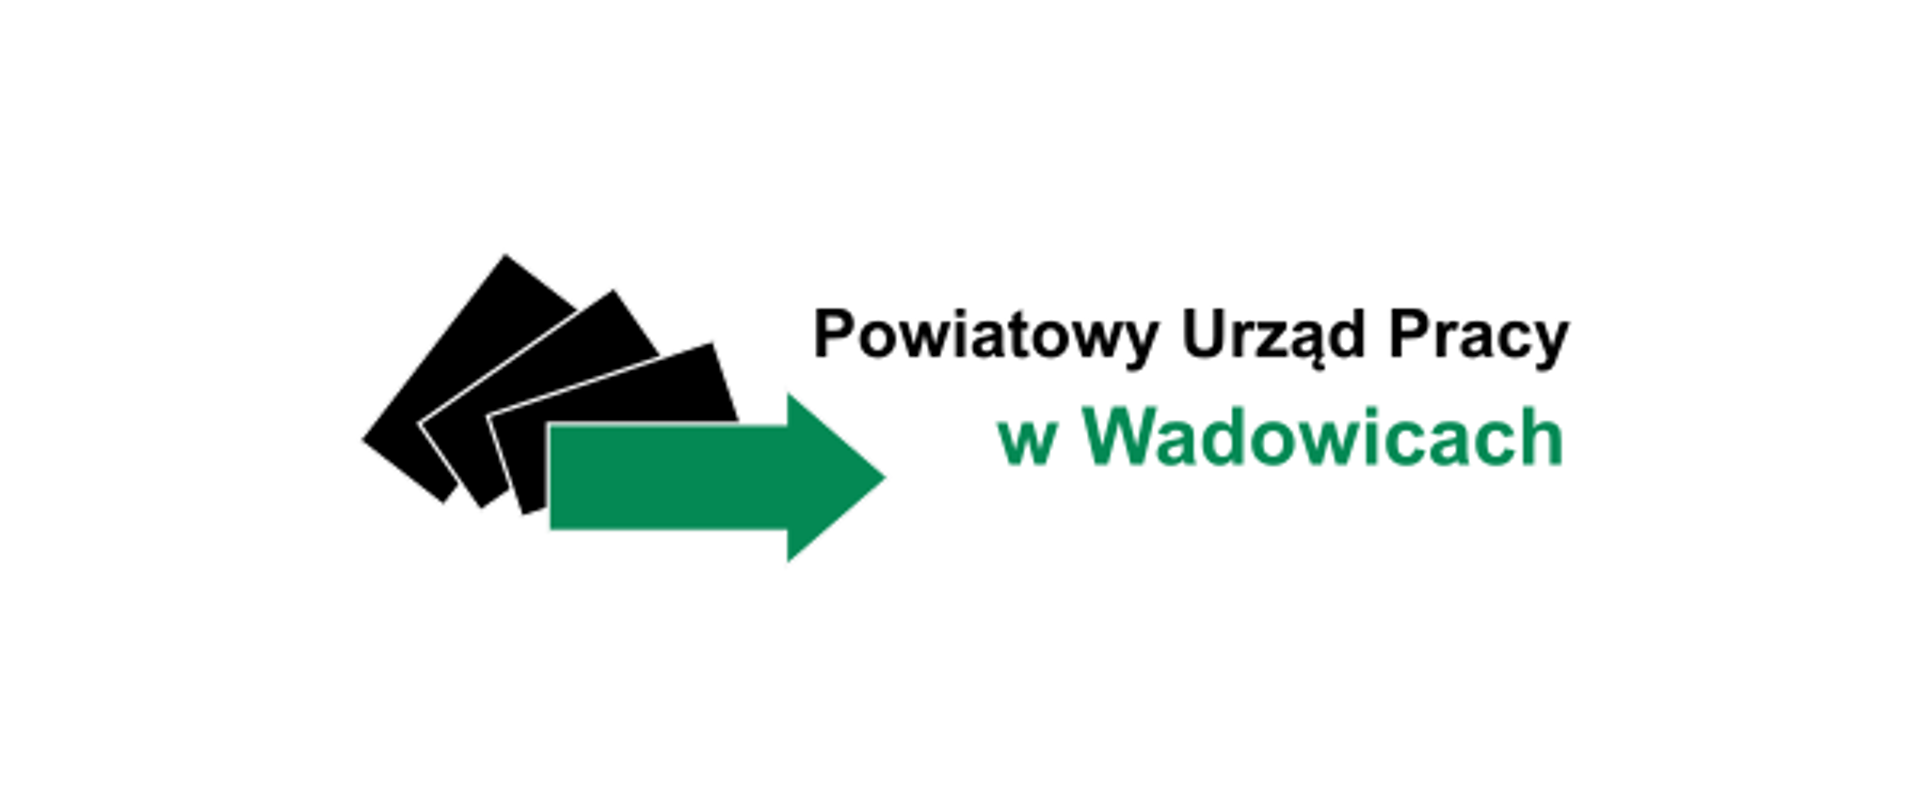 Logo urzędu pracy - czarne prostokąty i zielona strzałka oraz nazwa urzedu